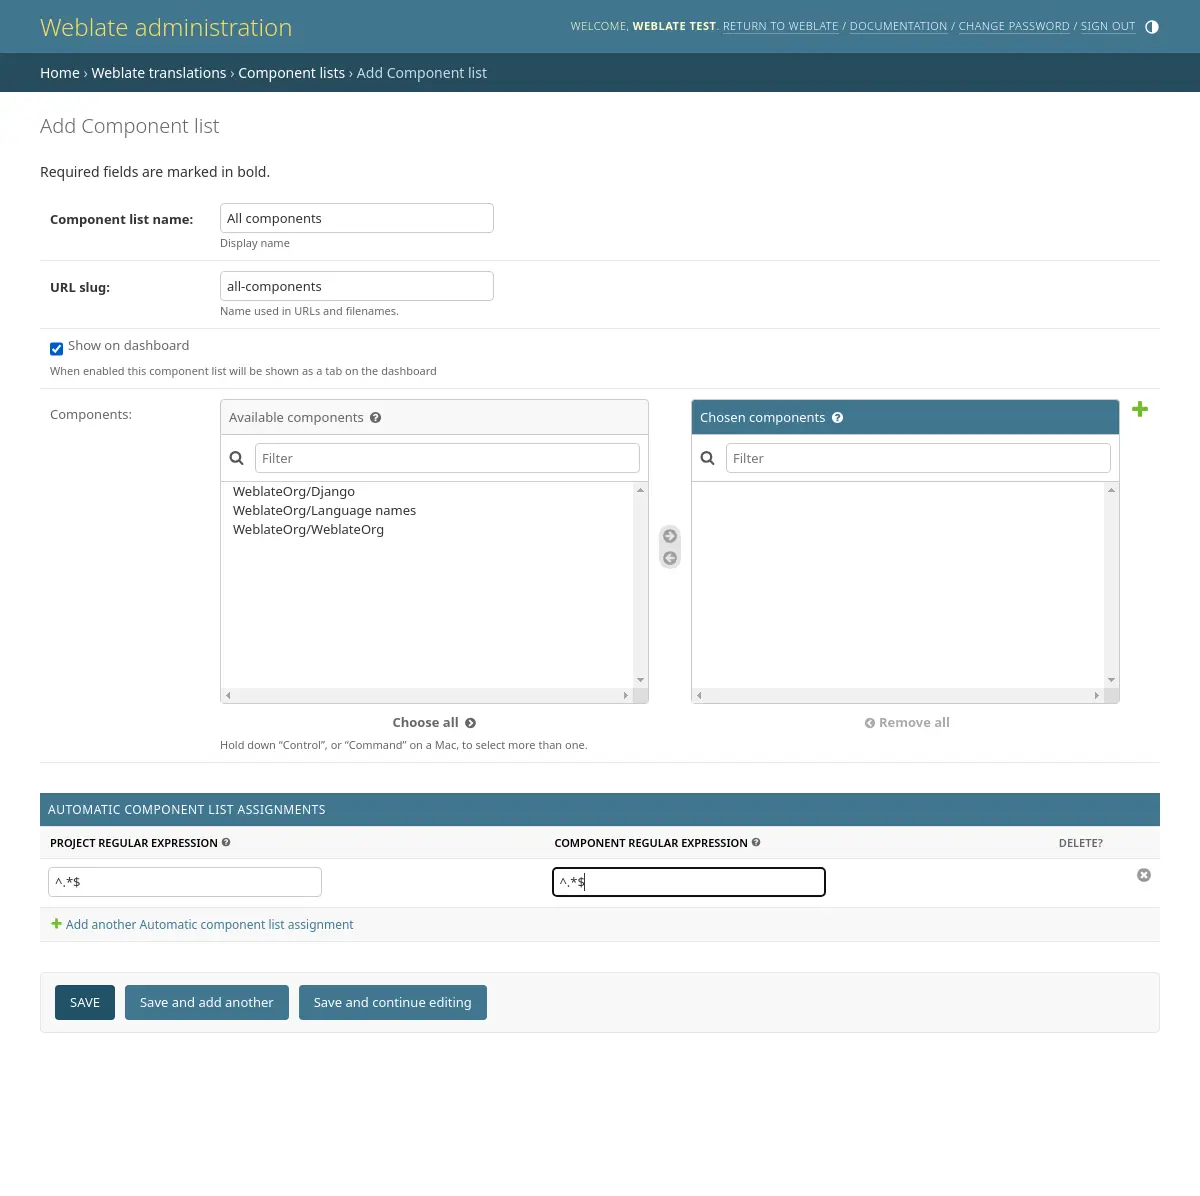 Imagem mostrando o painel de administração do Weblate com a configuração acima preenchida.